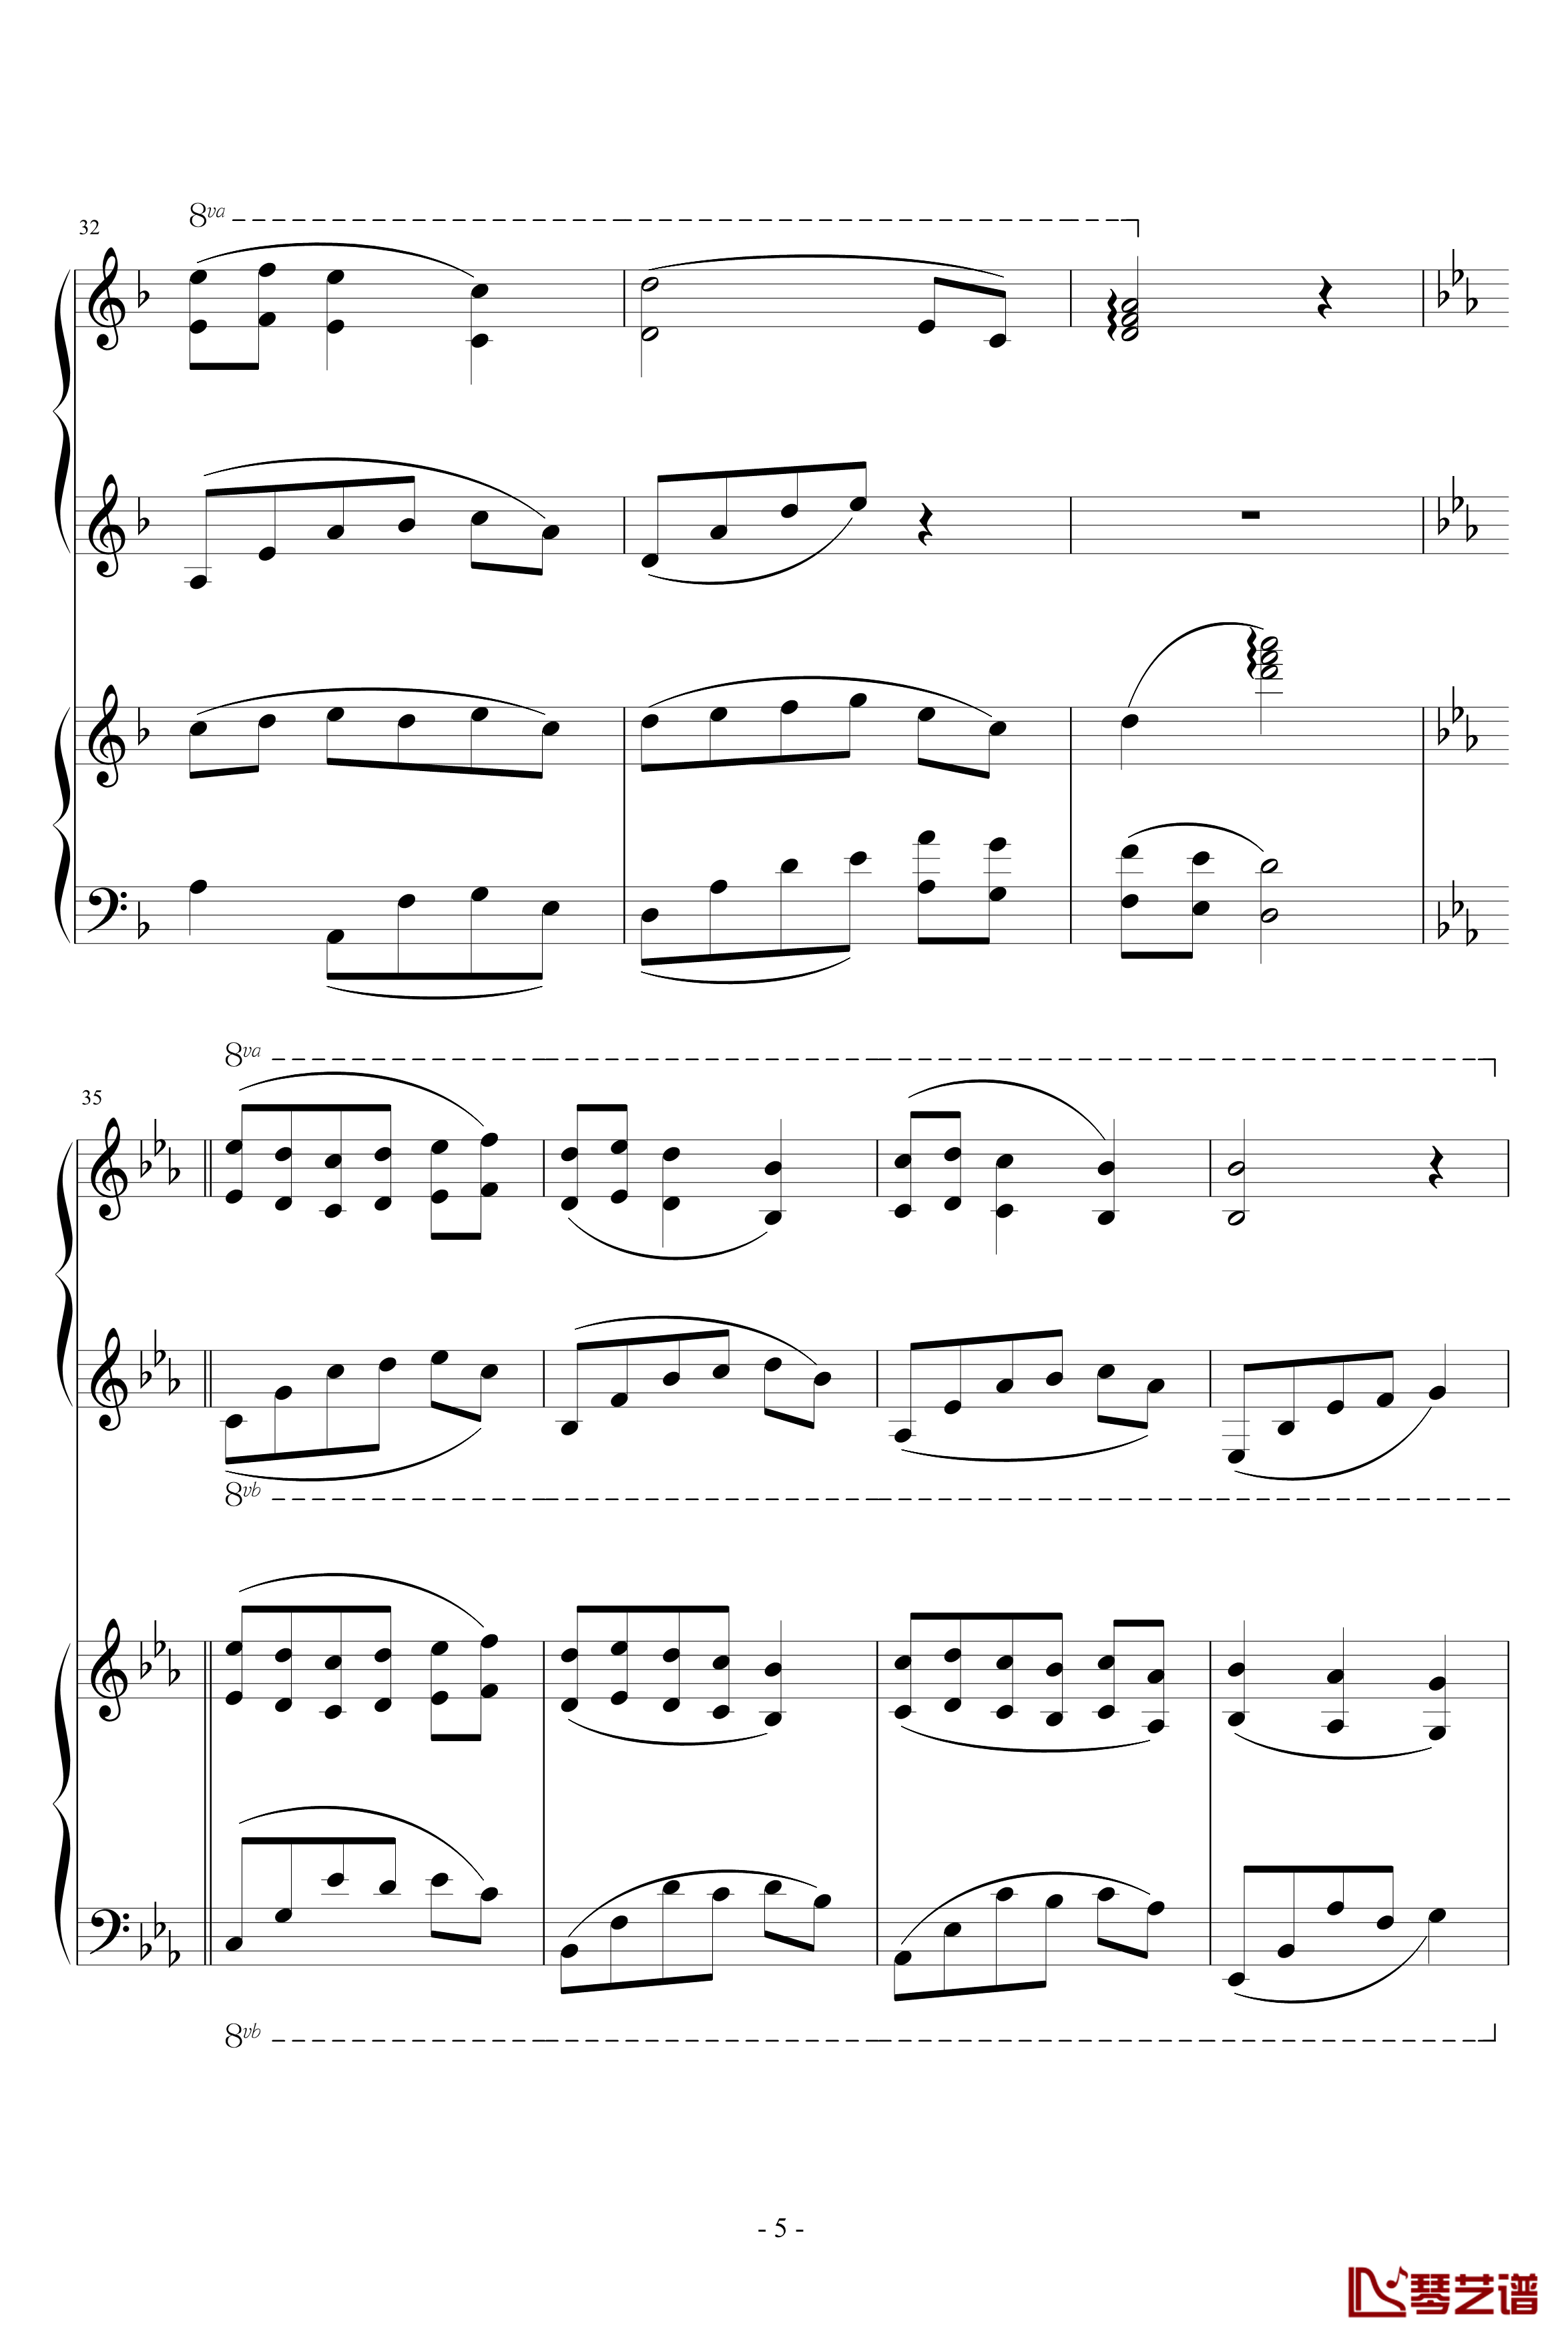 潘多拉之心插曲钢琴谱-双钢琴版-修改-影视-琴艺谱